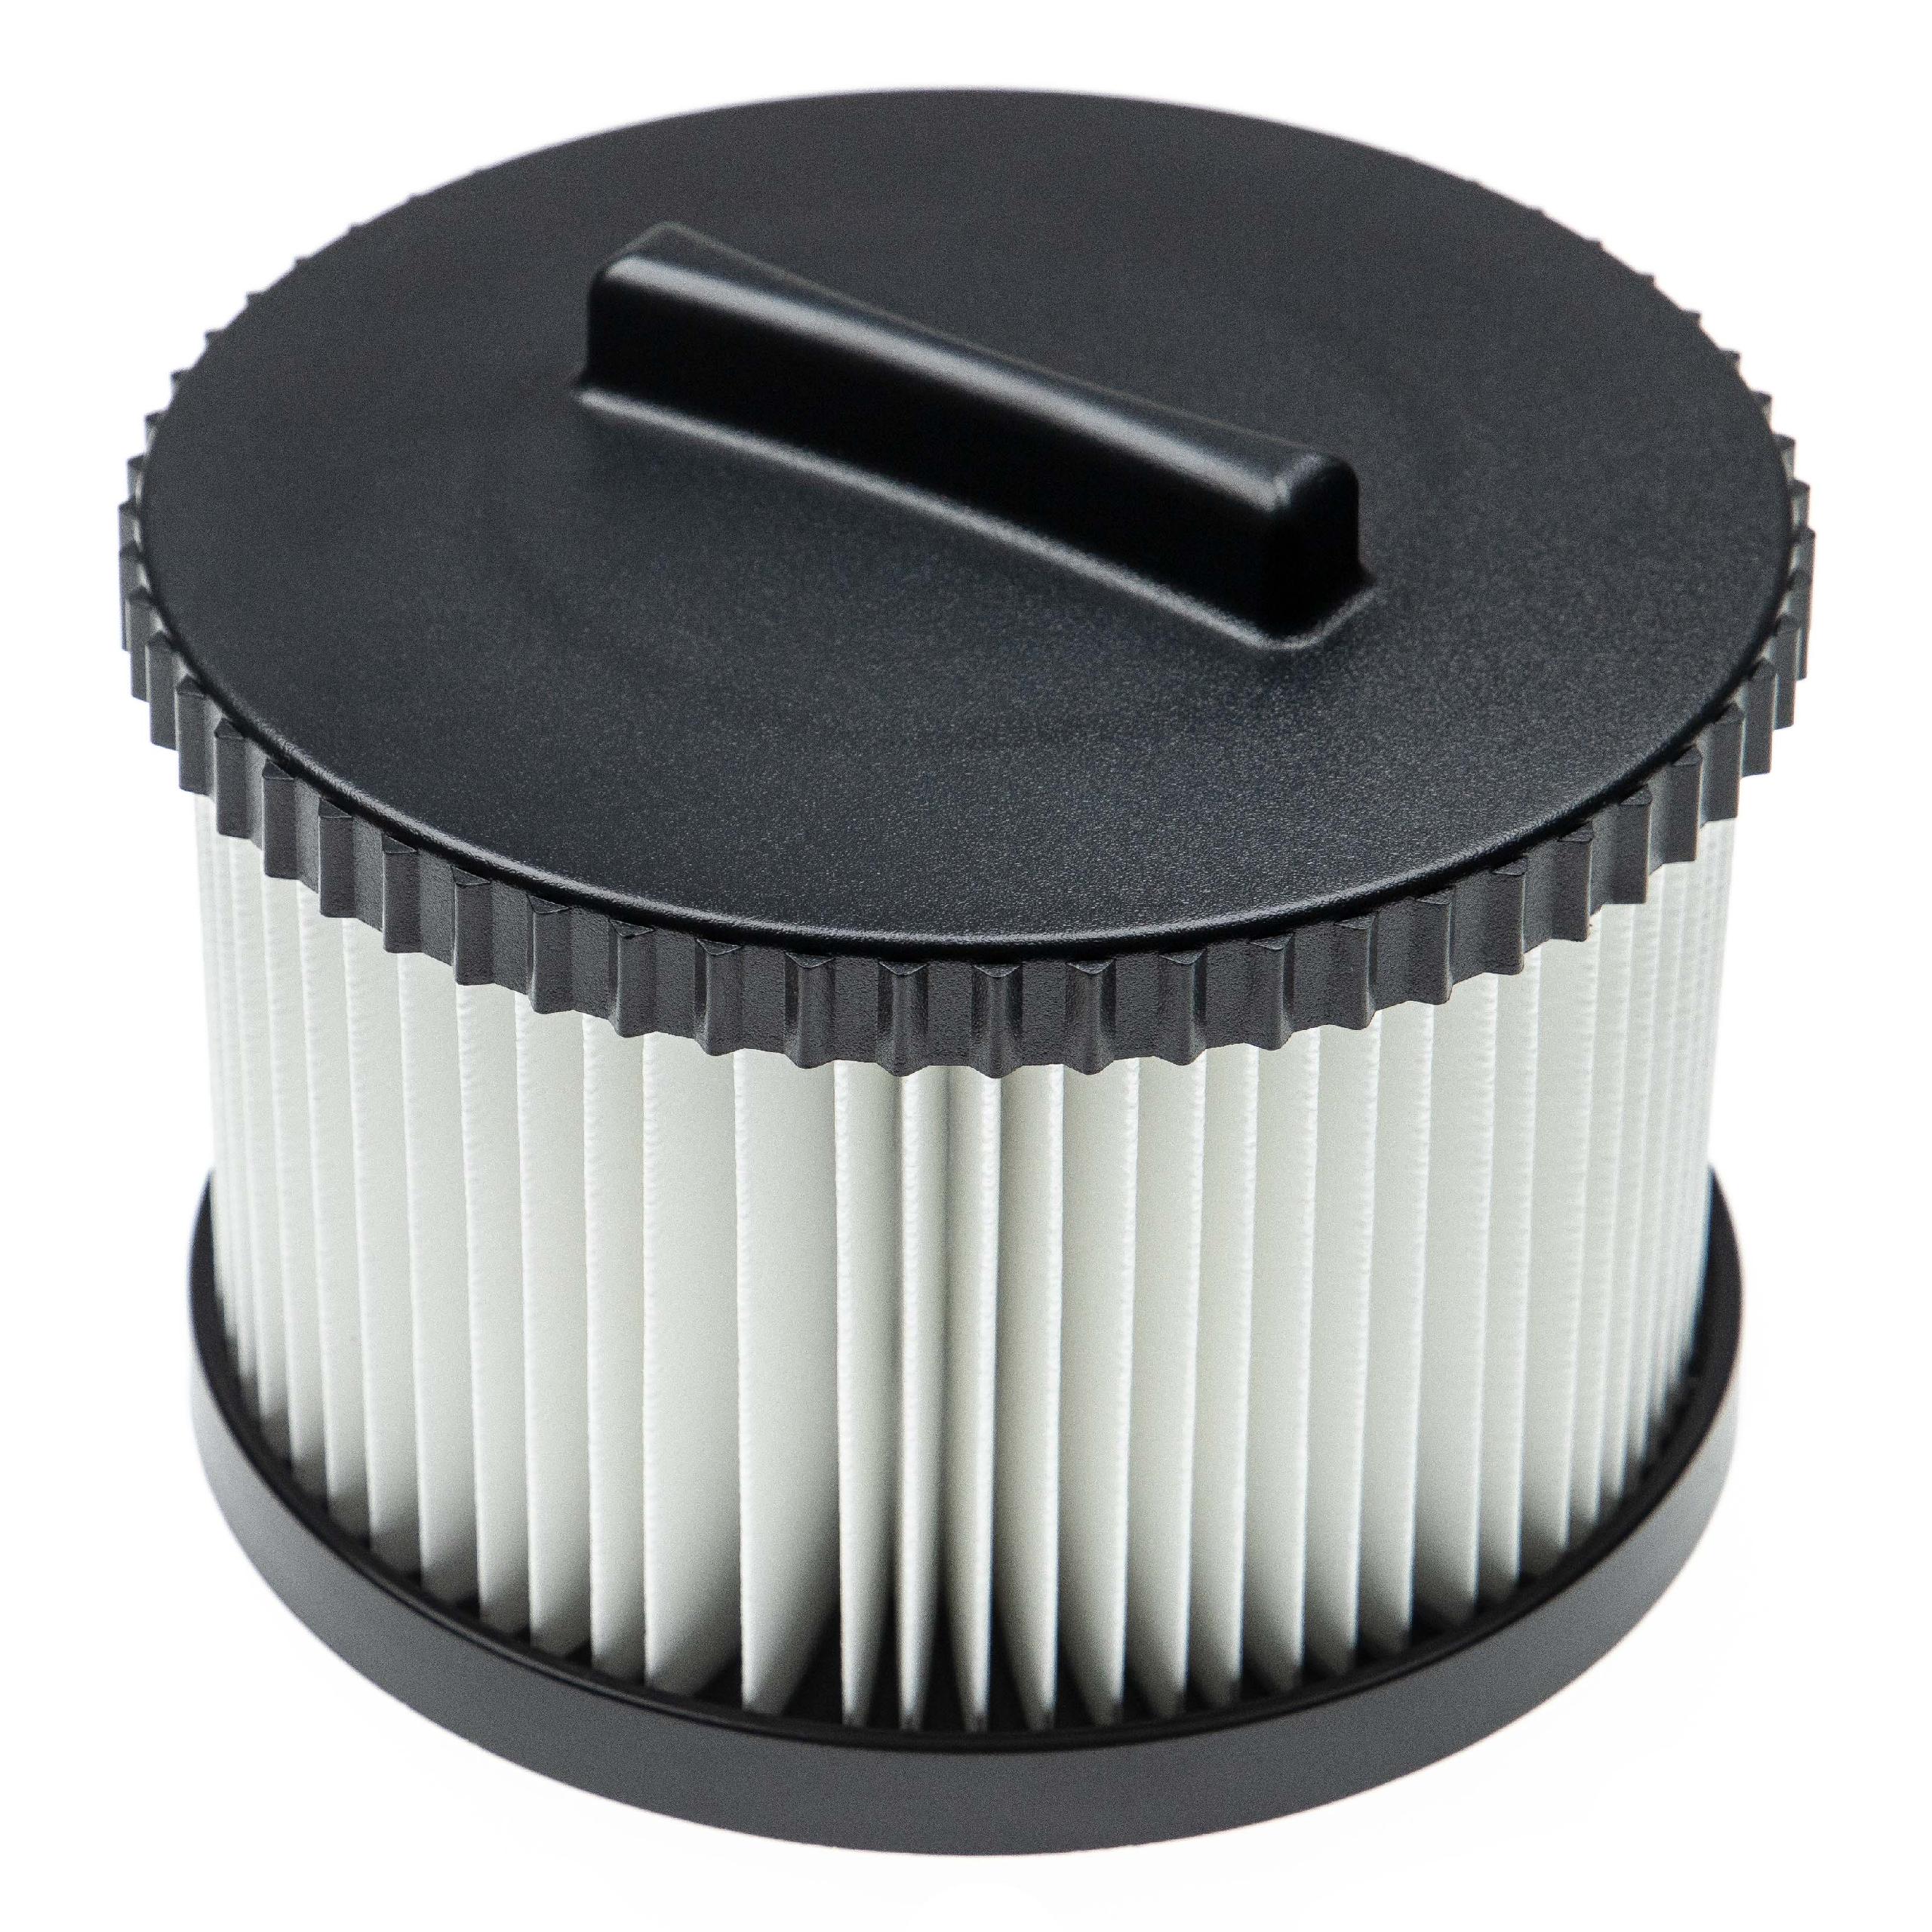 Filtro reemplaza Dewalt DWV9330 para aspiradora - filtro Hepa negro / blanco